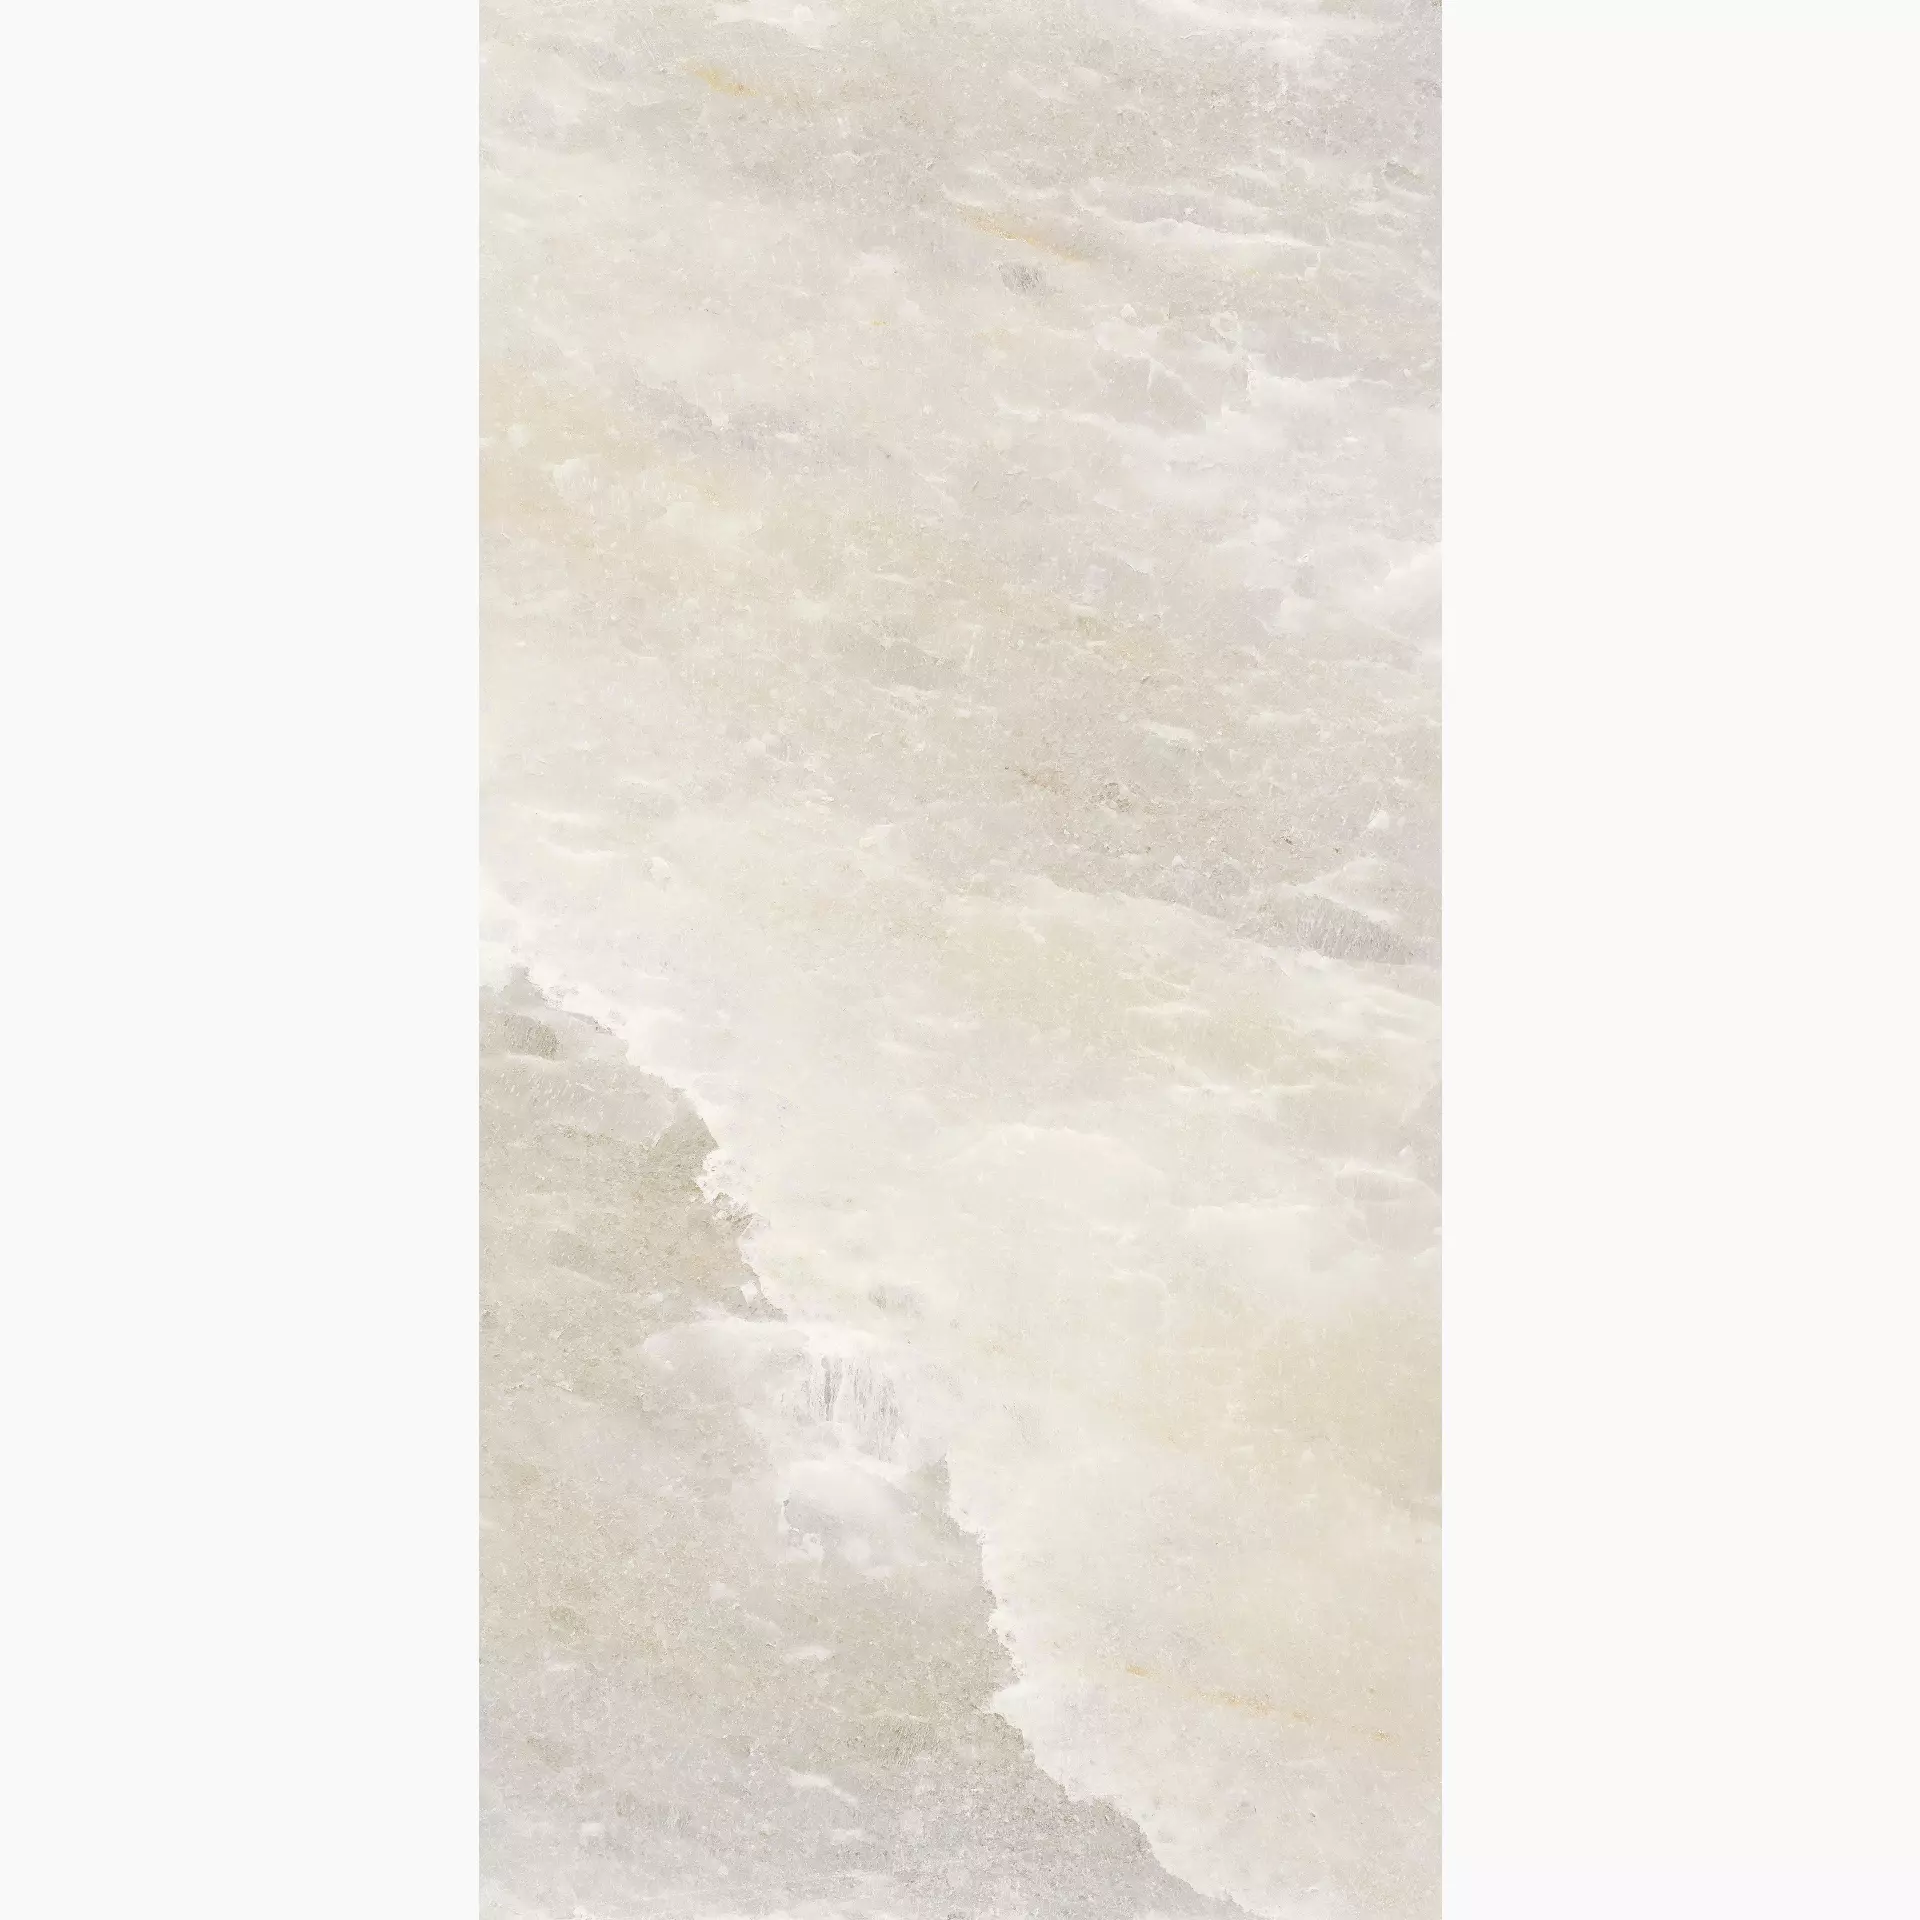 Florim Rock Salt White Gold Naturale – Matt White Gold 765849 matt natur 60x120cm rektifiziert 9mm